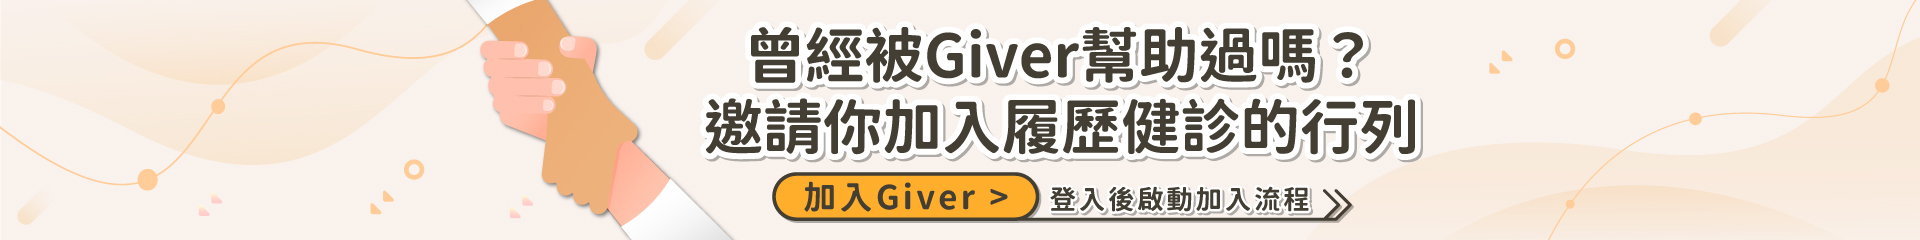 招募Giver